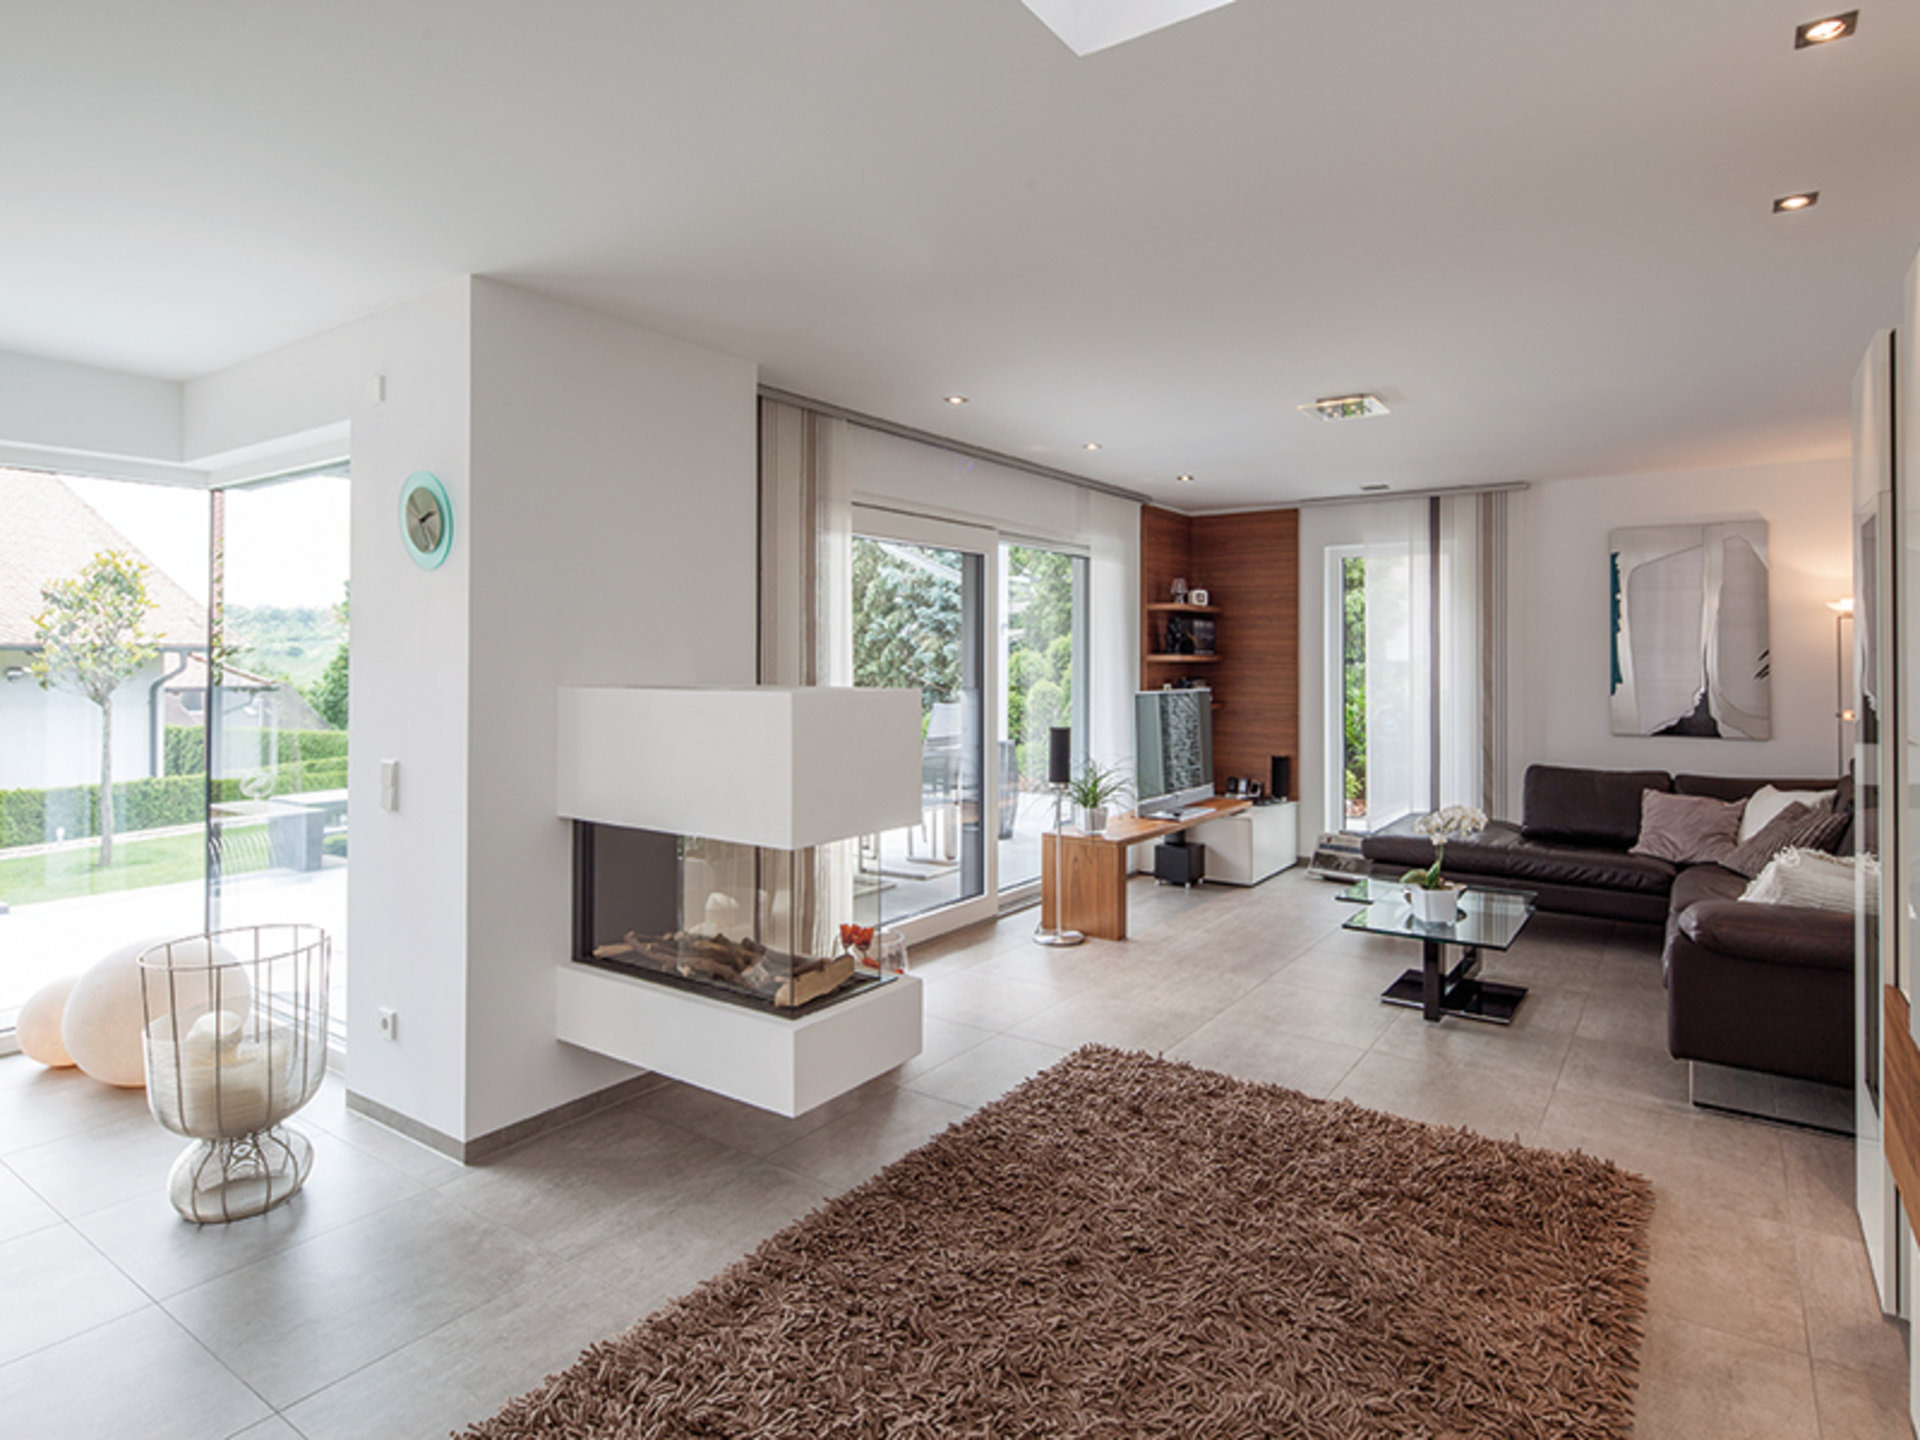 BAUMEISTER-HAUS Uthoff – Wohnbereich mit Kaminofen und großen Glasflächen in Richtung Garten